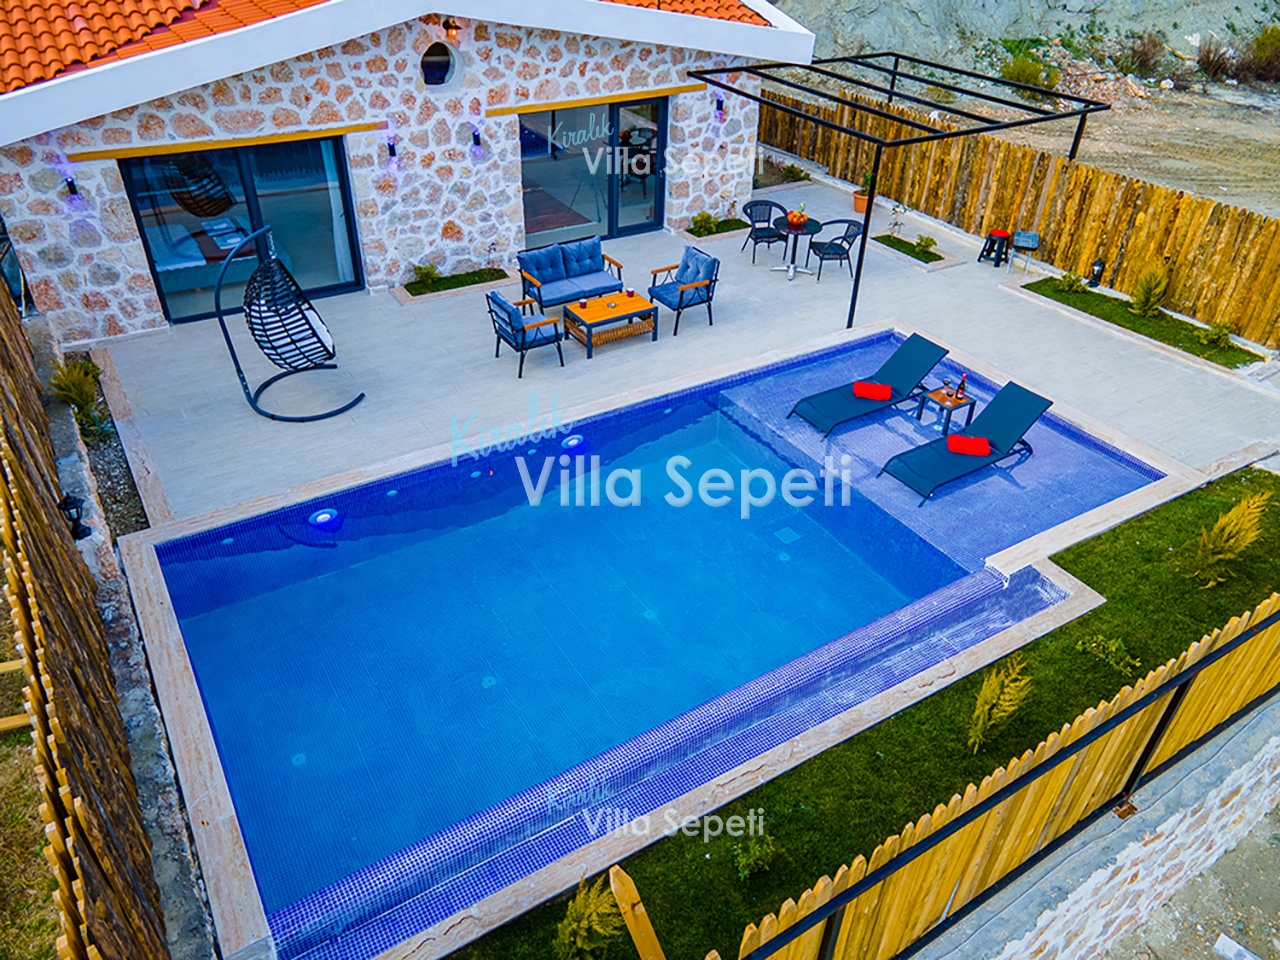 Villa Serenity 4